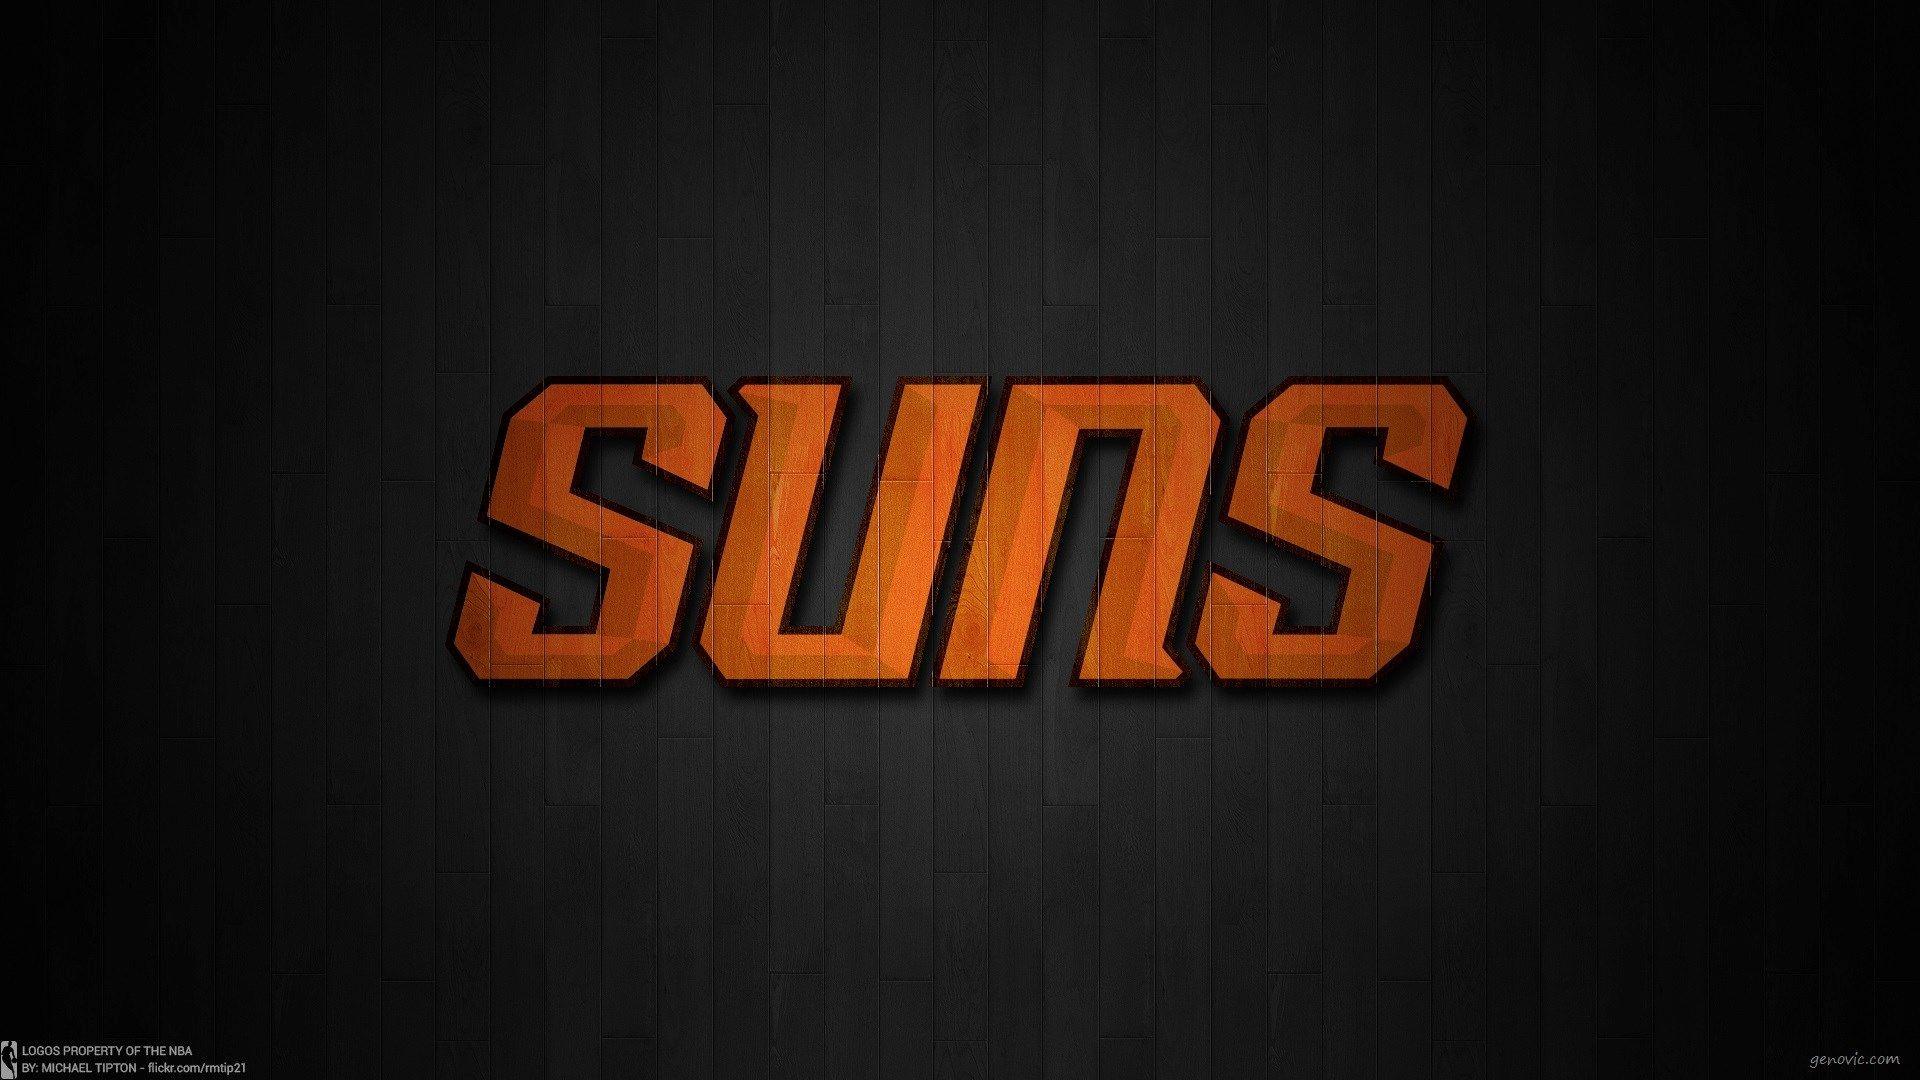 Sports Phoenix Suns HD Wallpaper